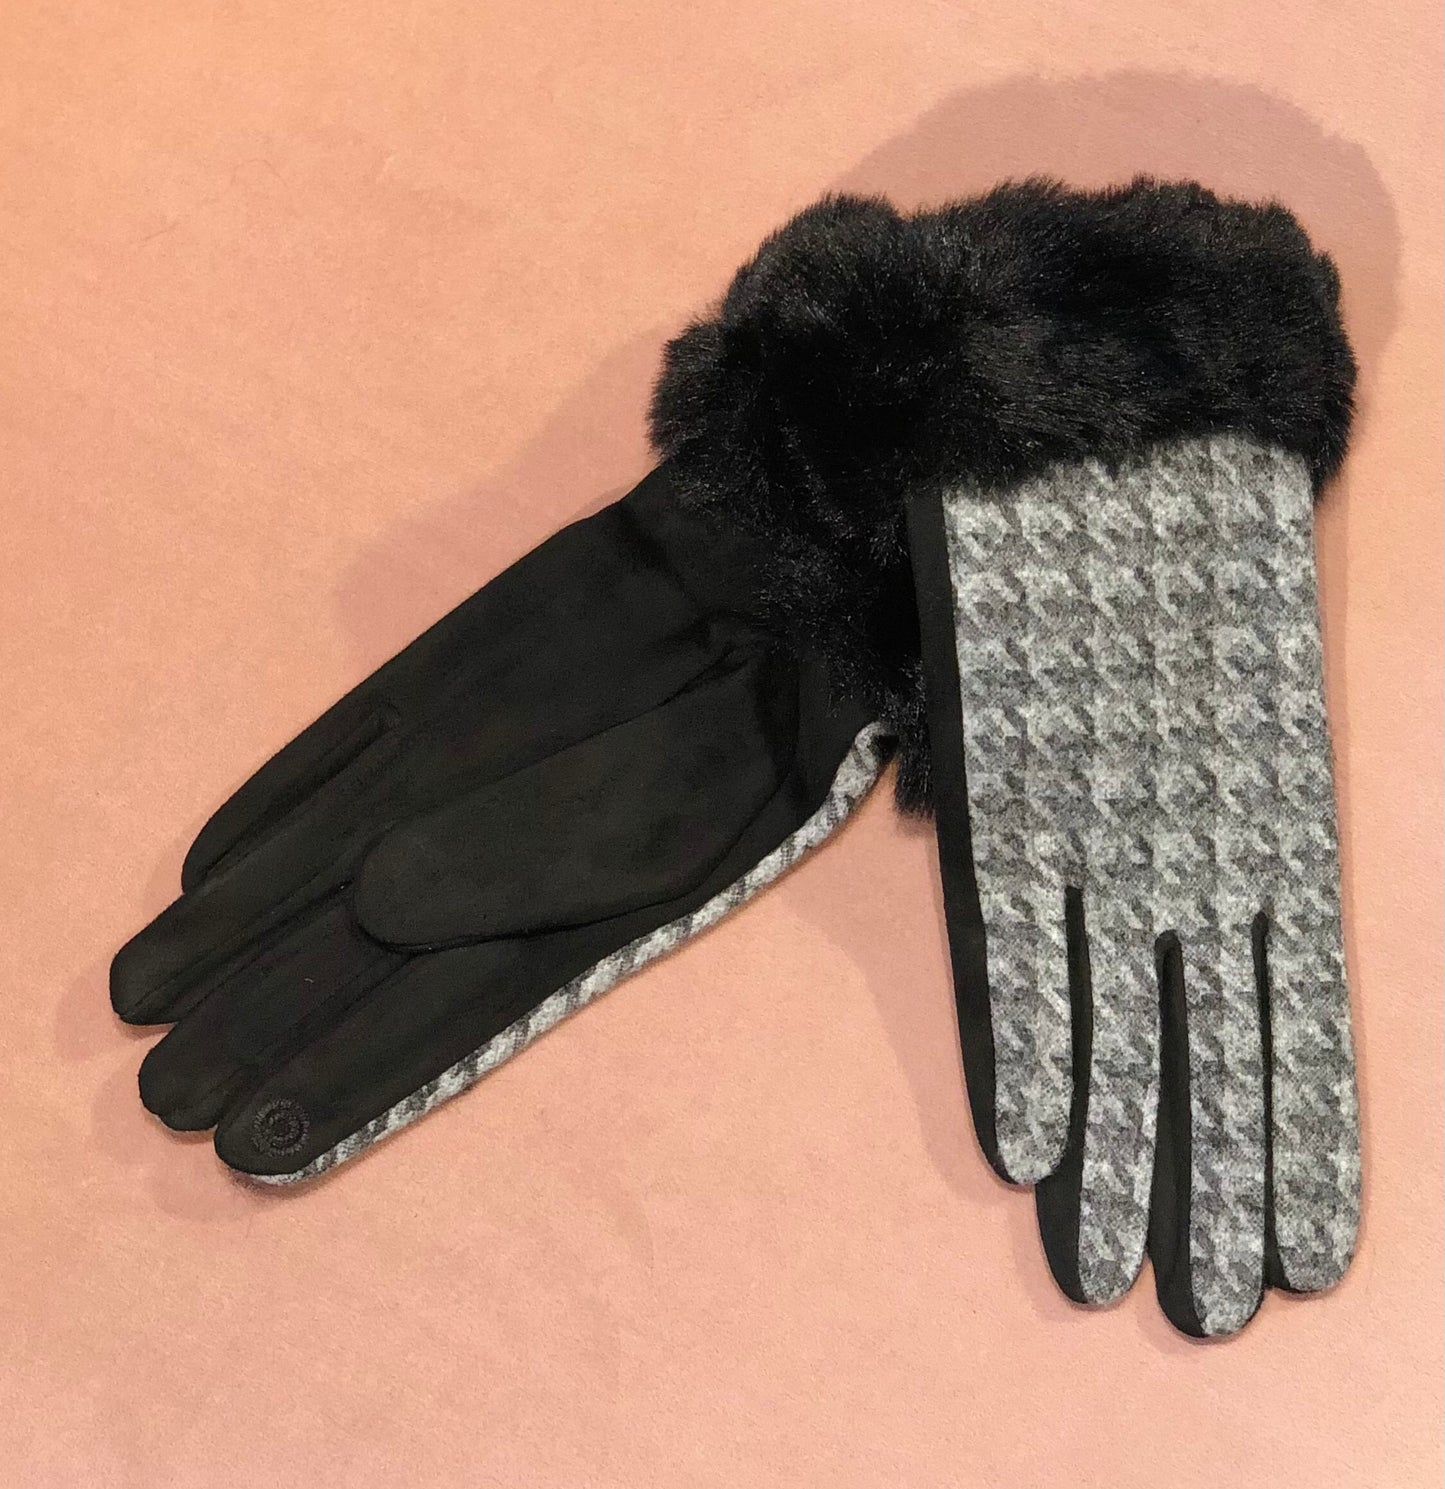 GK- 0307 Gloves